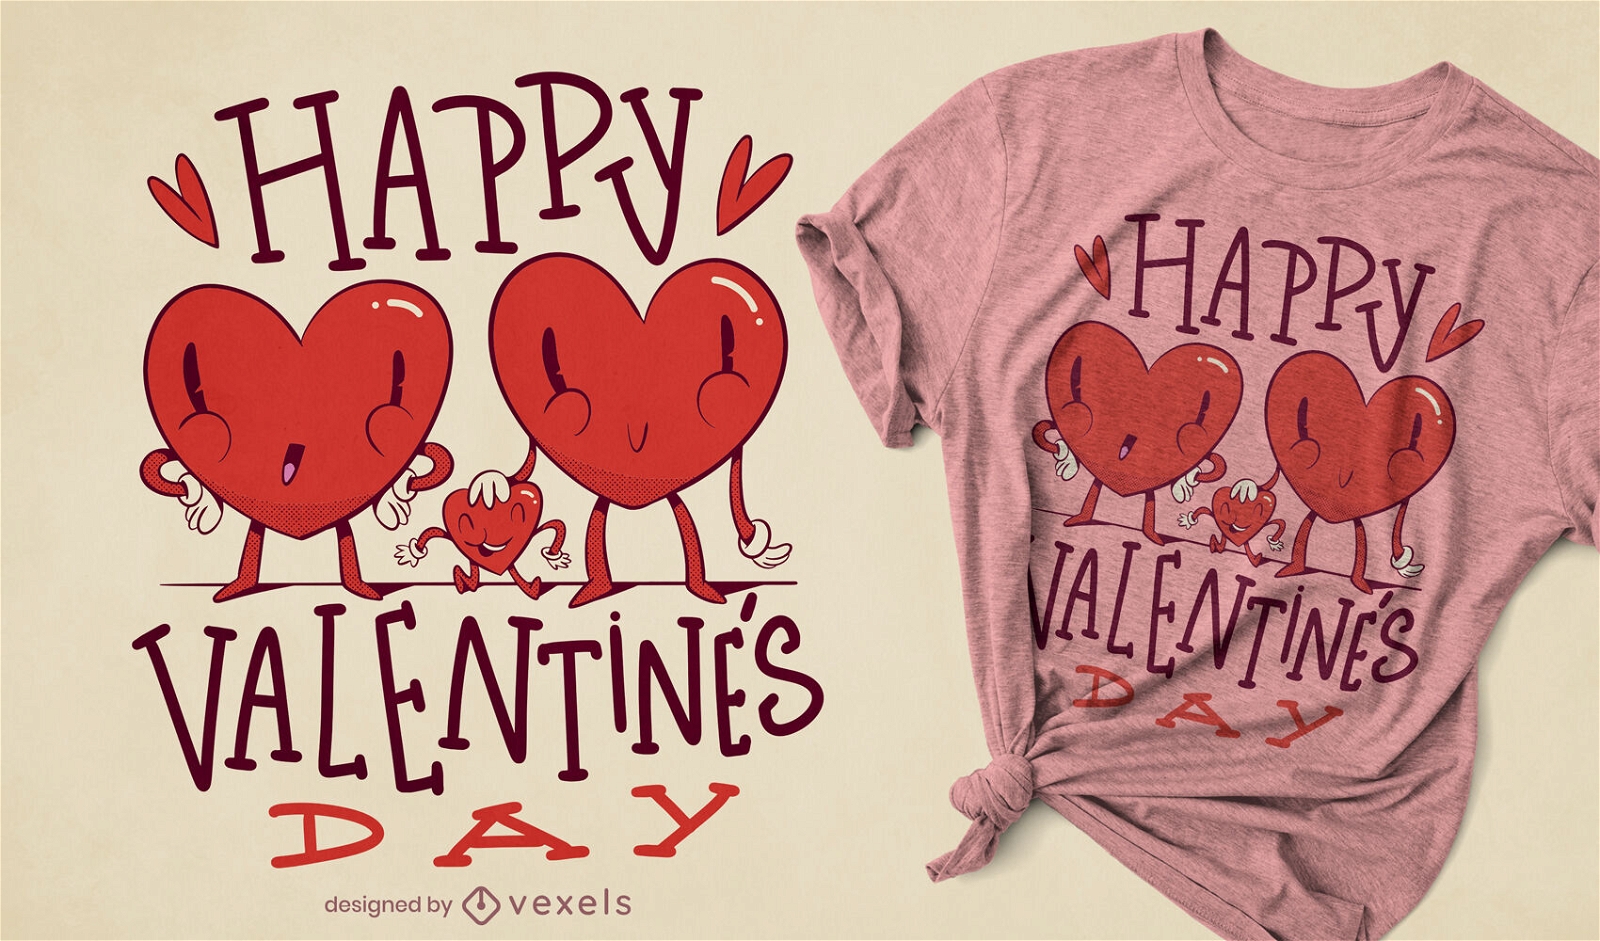 Valentines heart t-shirt design